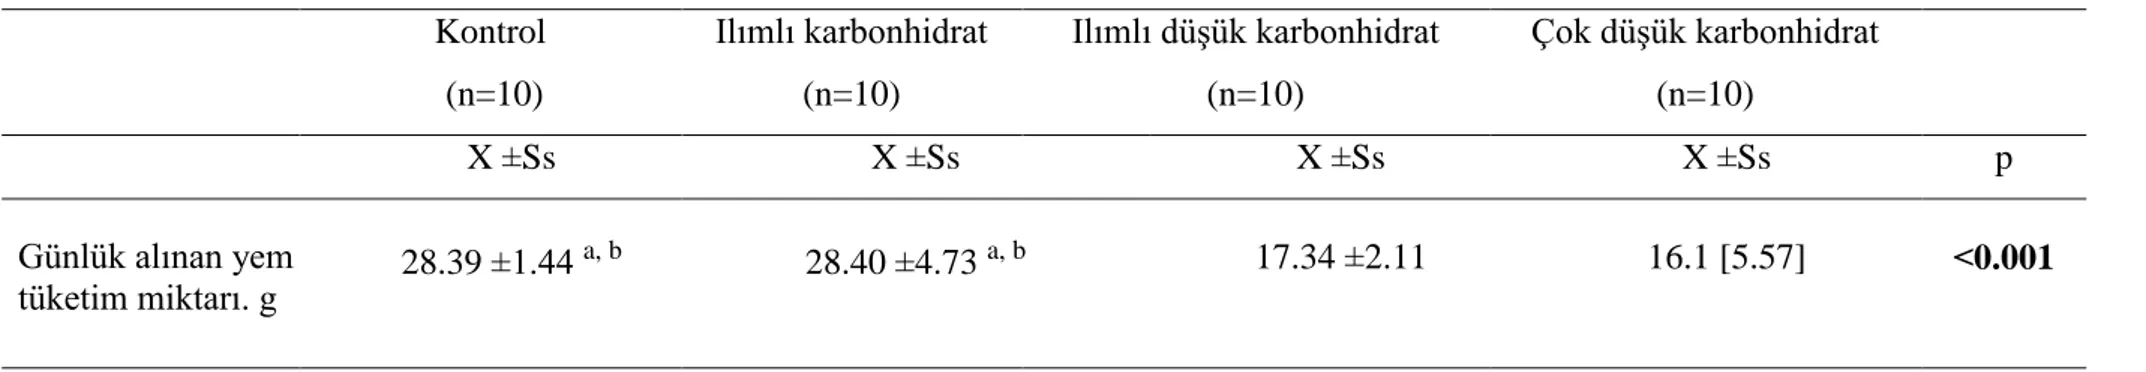 Tablo 4.1.1. Grupların yem tüketim miktarı (g) ortalama ve median değerleri  Kontrol   (n=10)  Ilımlı karbonhidrat (n=10)  Ilımlı düşük karbonhidrat (n=10)  Çok düşük karbonhidrat (n=10)  X ±Ss   X ±Ss   X ±Ss   X ±Ss  p Günlük alınan yem  tüketim miktarı